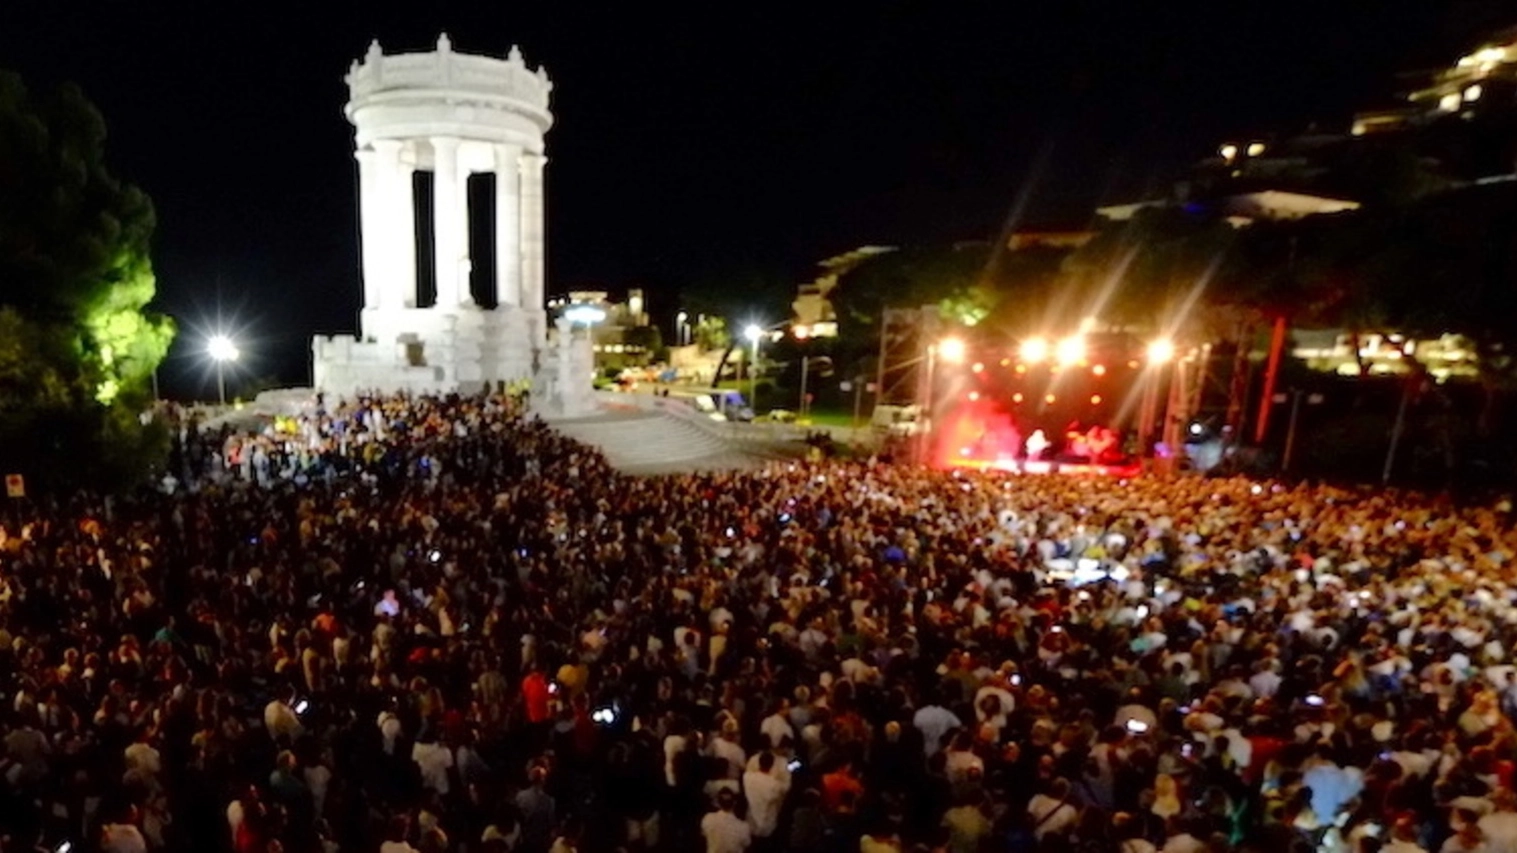 Folla al Passetto per il concerto di Zampaglione: “Vengo spesso nelle Marche, le conosco bene”. Il sindaco: “Città finalmente protagonista”